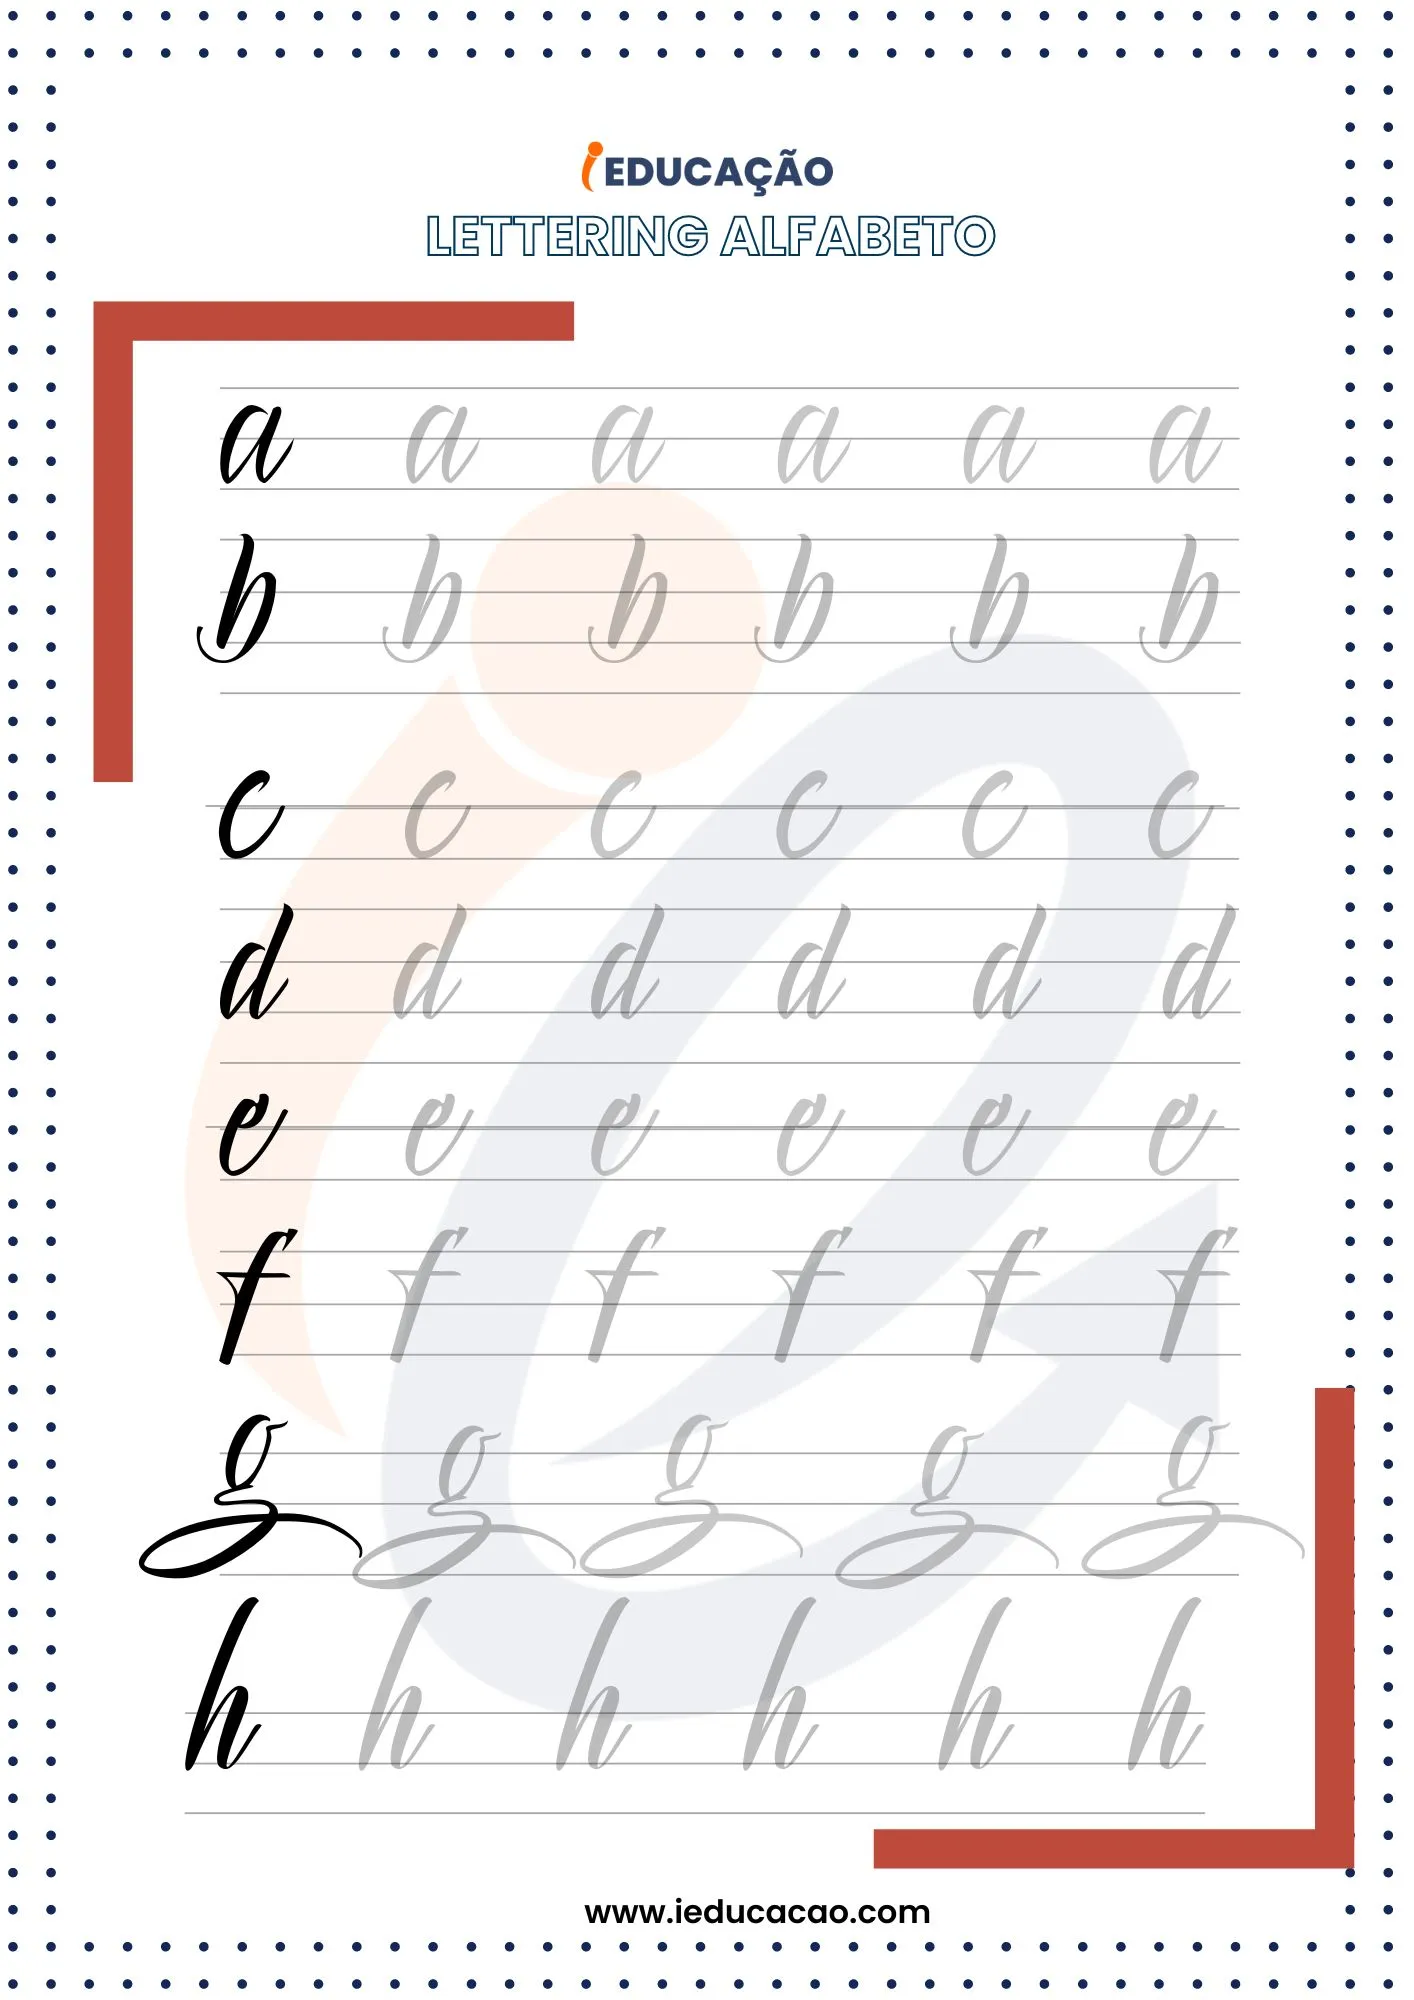 Lettering Alfabeto- Alfabeto para Treinar Lettering